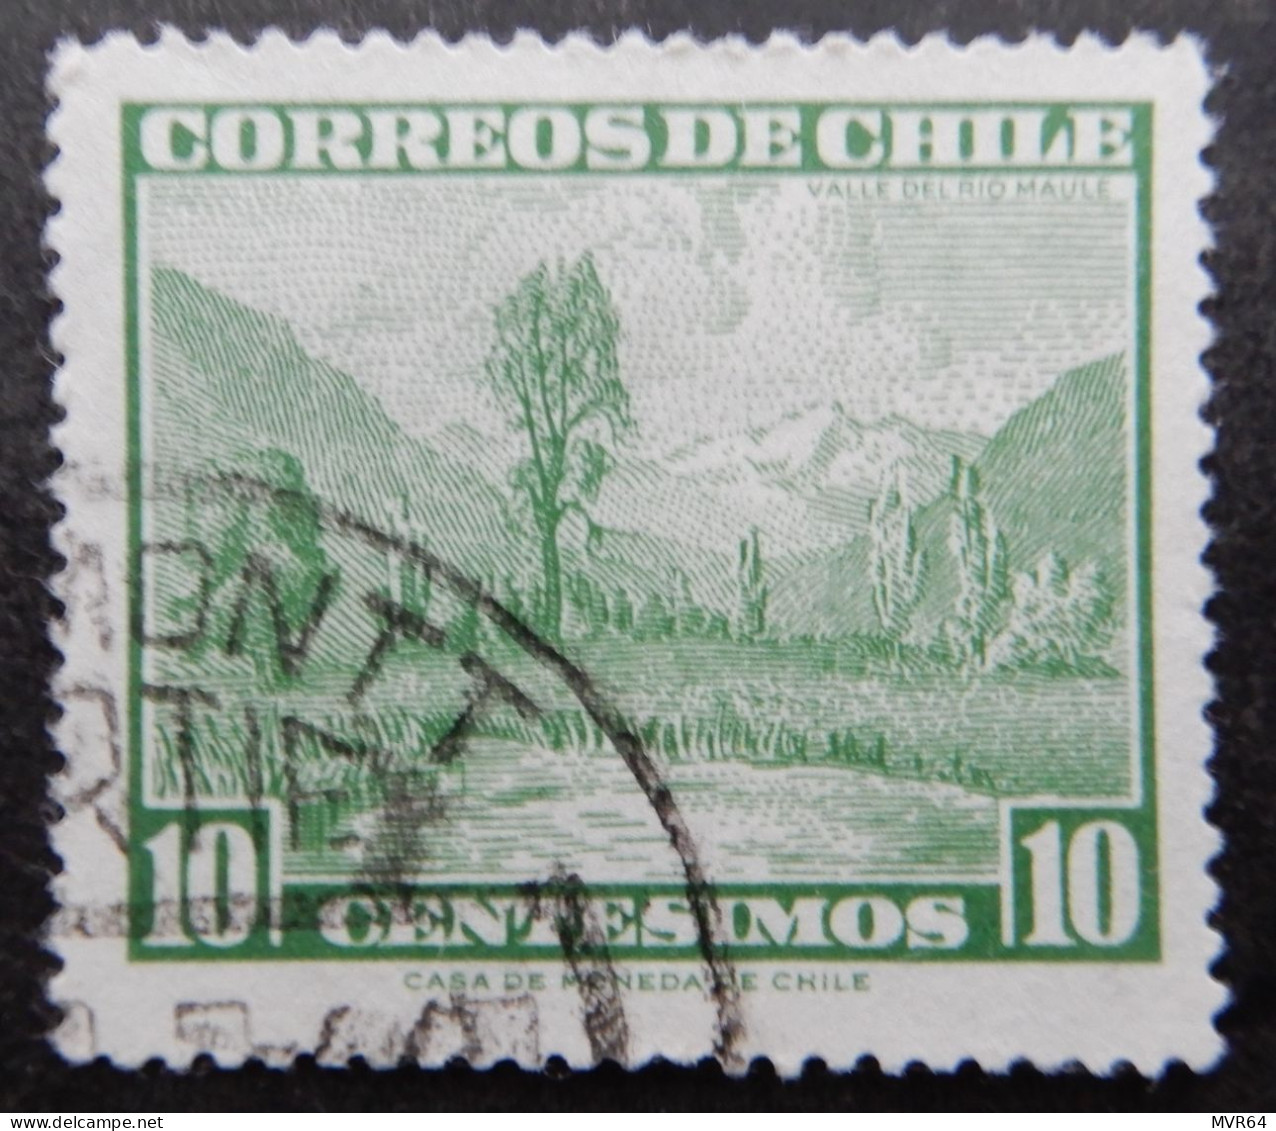 Chili Chile 1961 (1) Maule River Valley Valle Del Fiume Maule - Chile